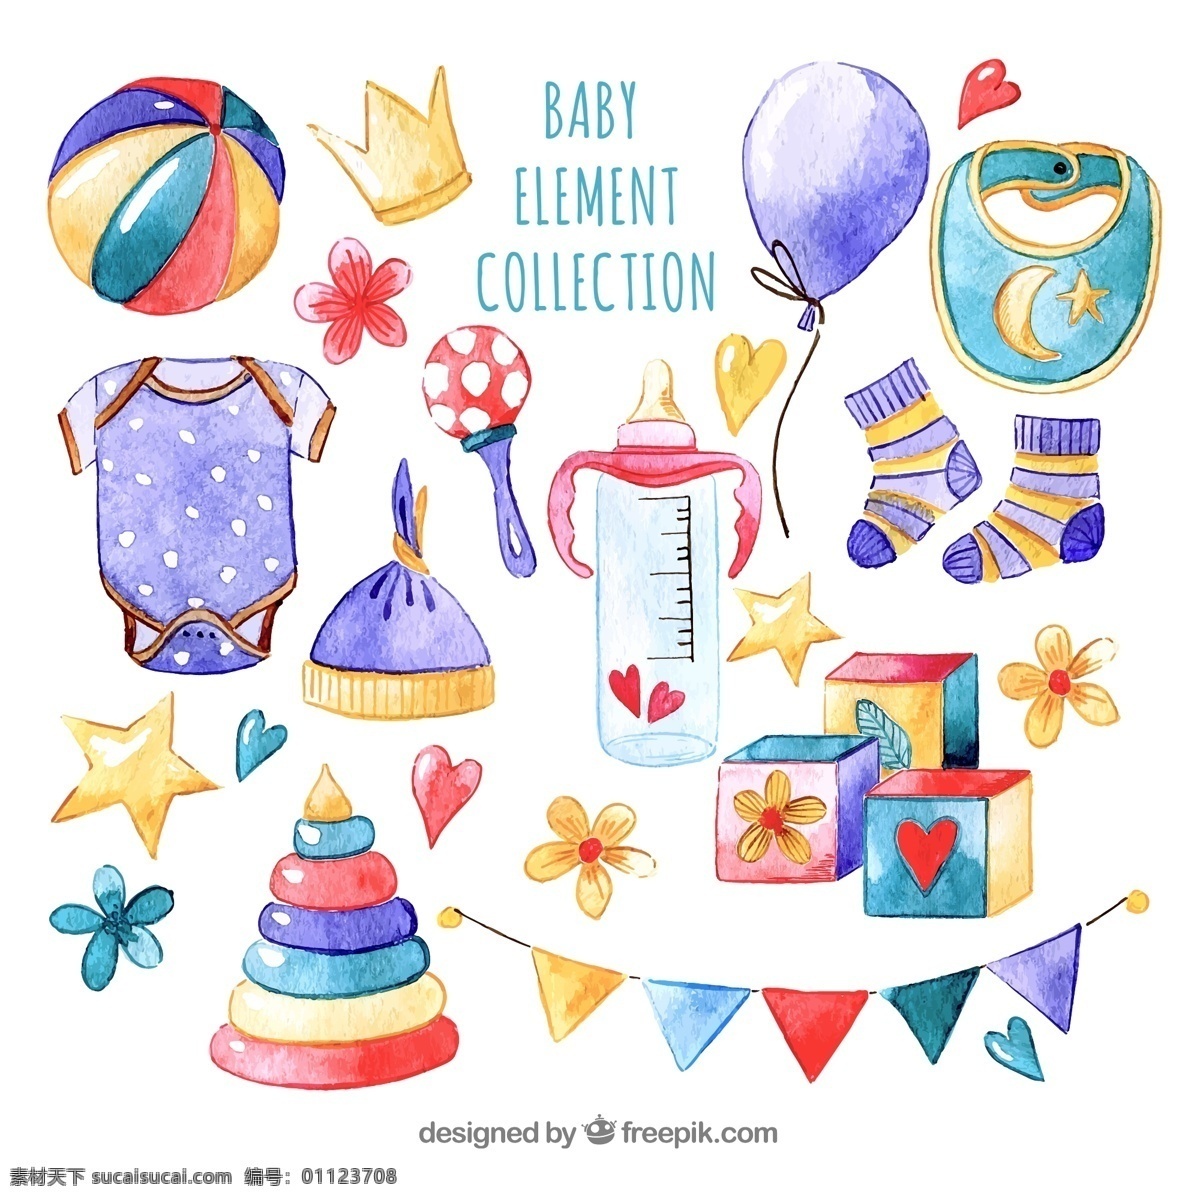 彩绘婴儿用品 彩绘 婴儿 用品 球 王冠 气球 围嘴 婴儿爬服 摇铃 生活用品 生活百科